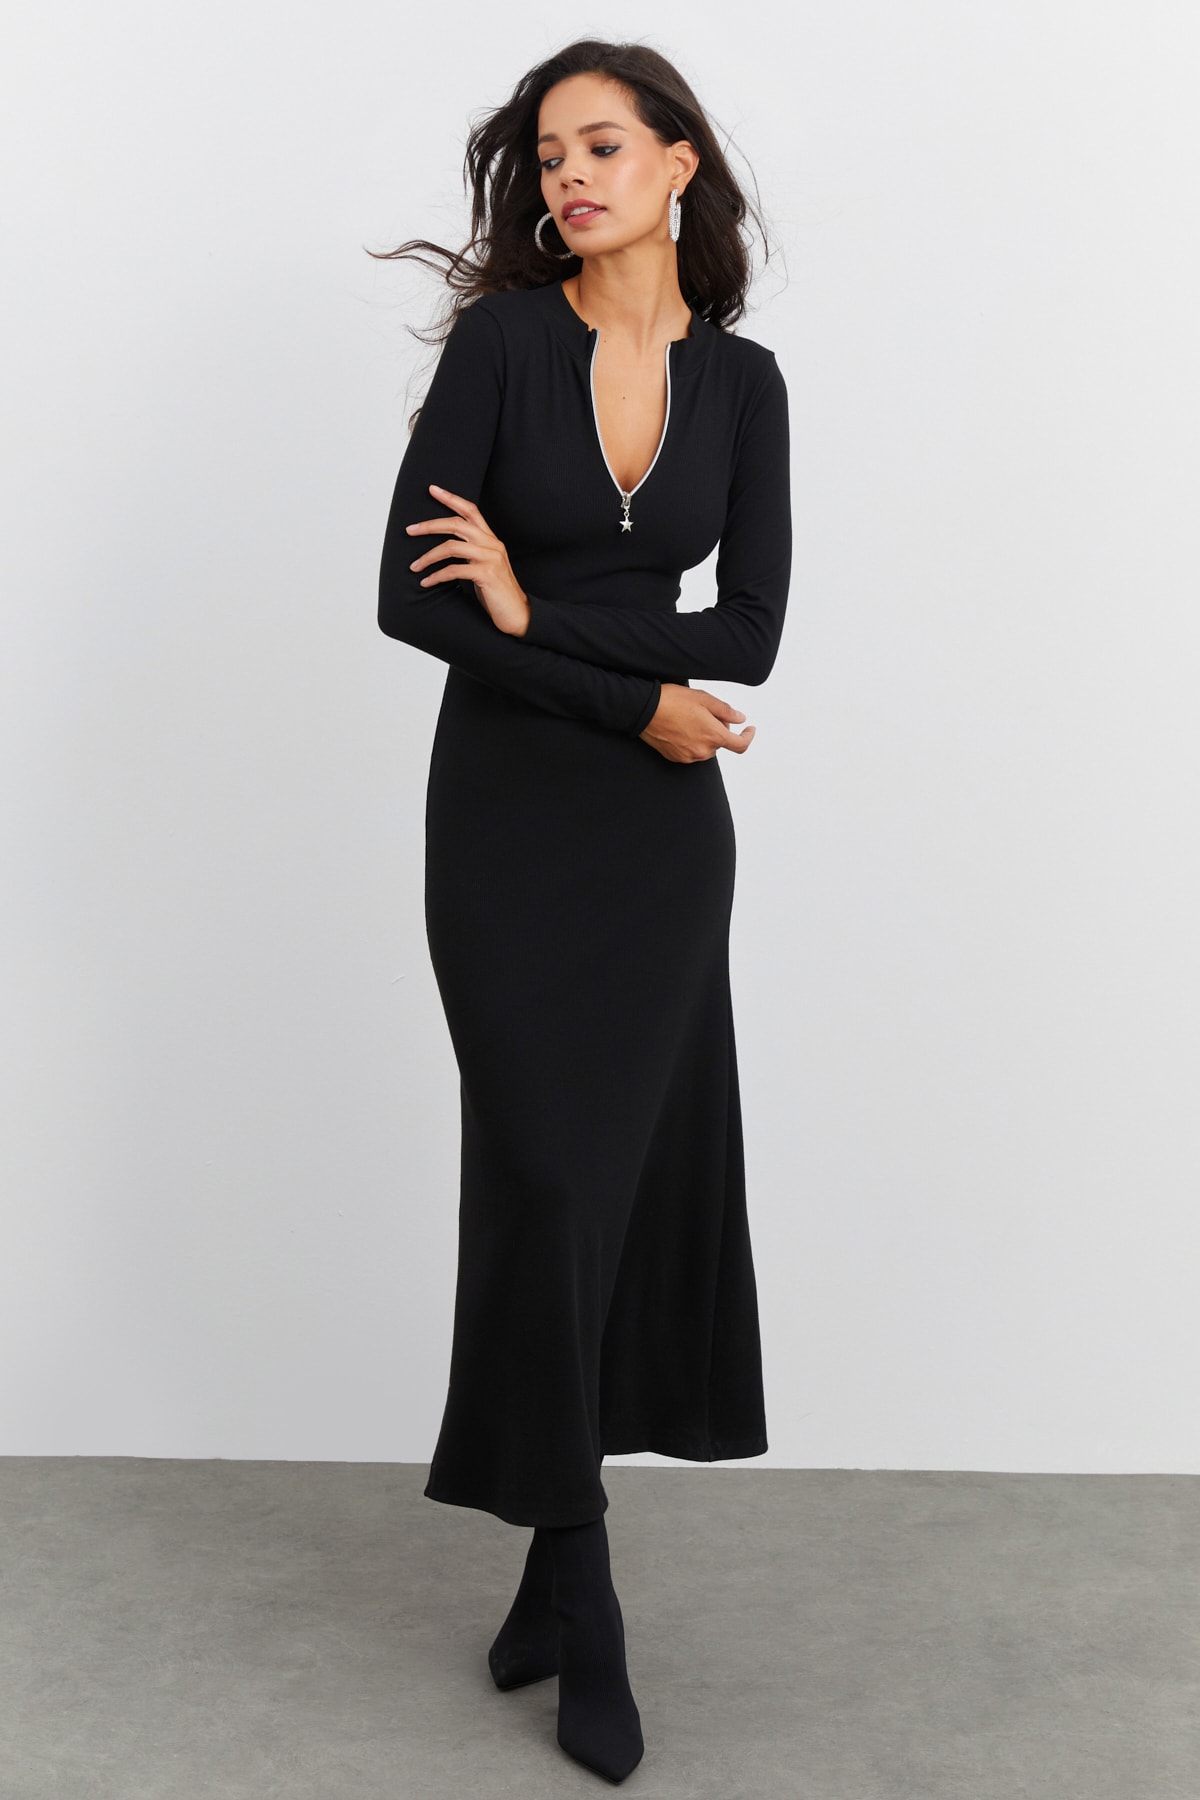 Cool & Sexy Kleid Schwarz Wickelschnitt Fast ausverkauft